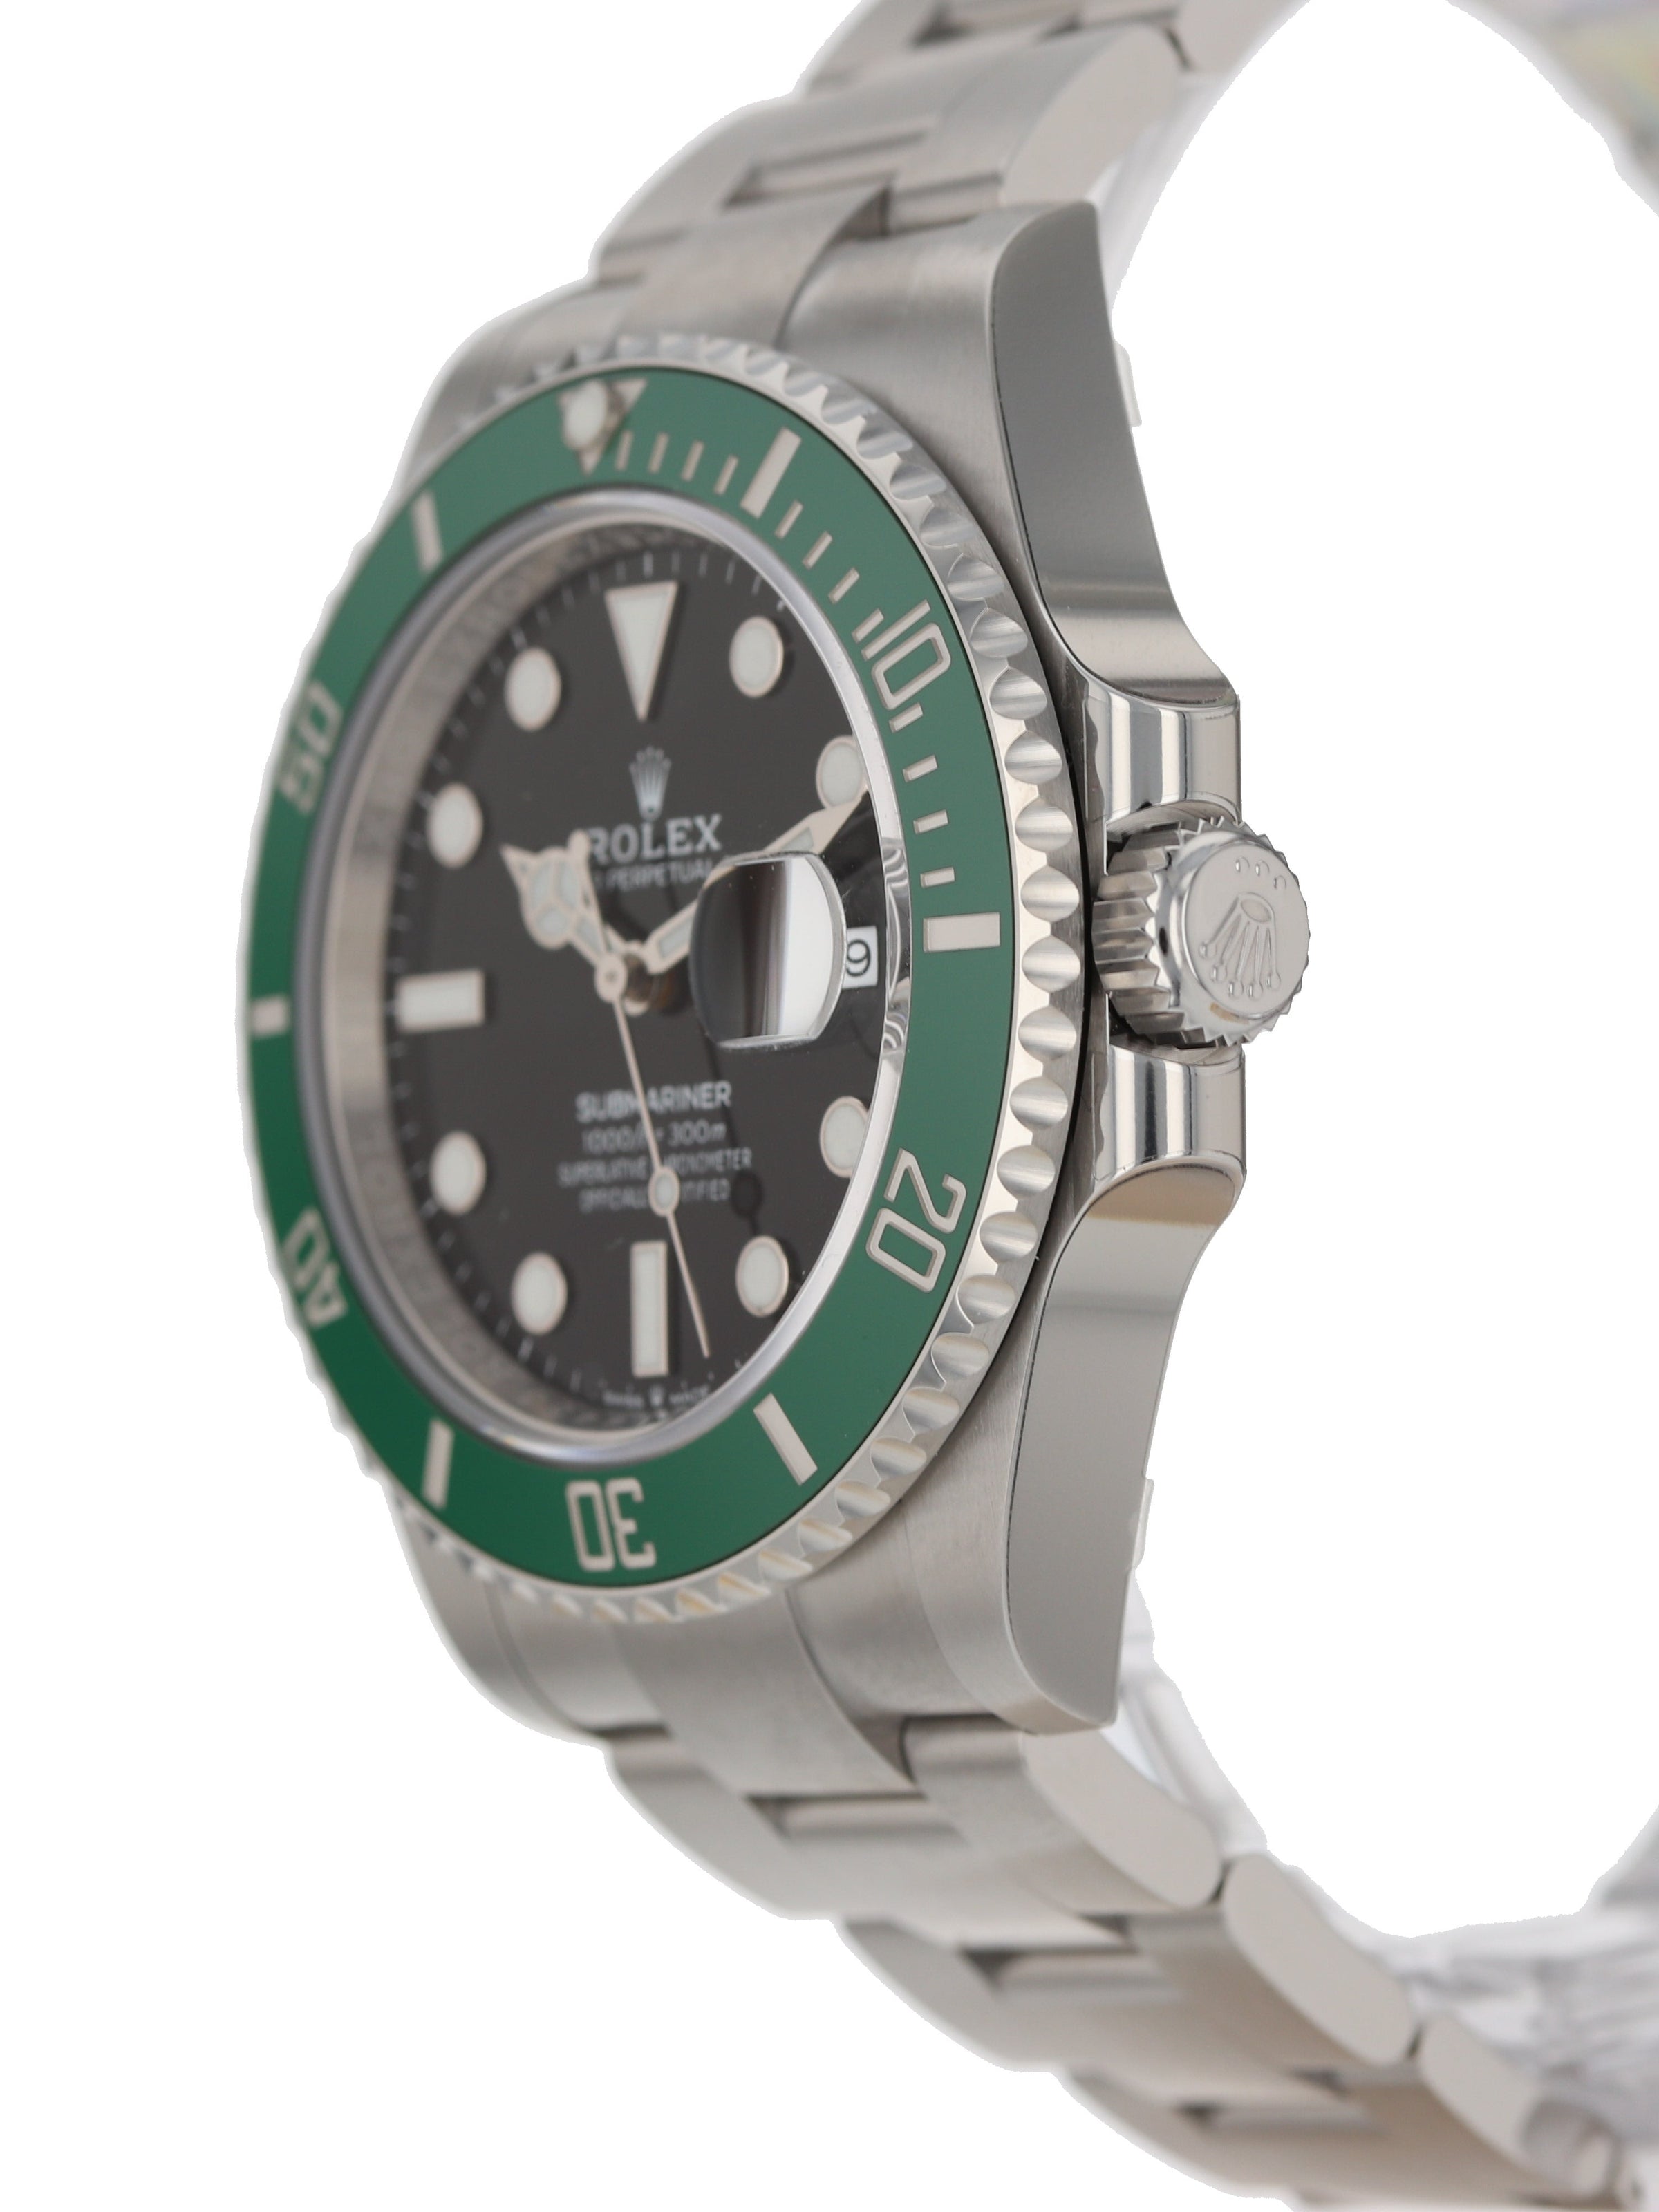 Rolex 126610LV Starbucks Submariner Date – Watches International